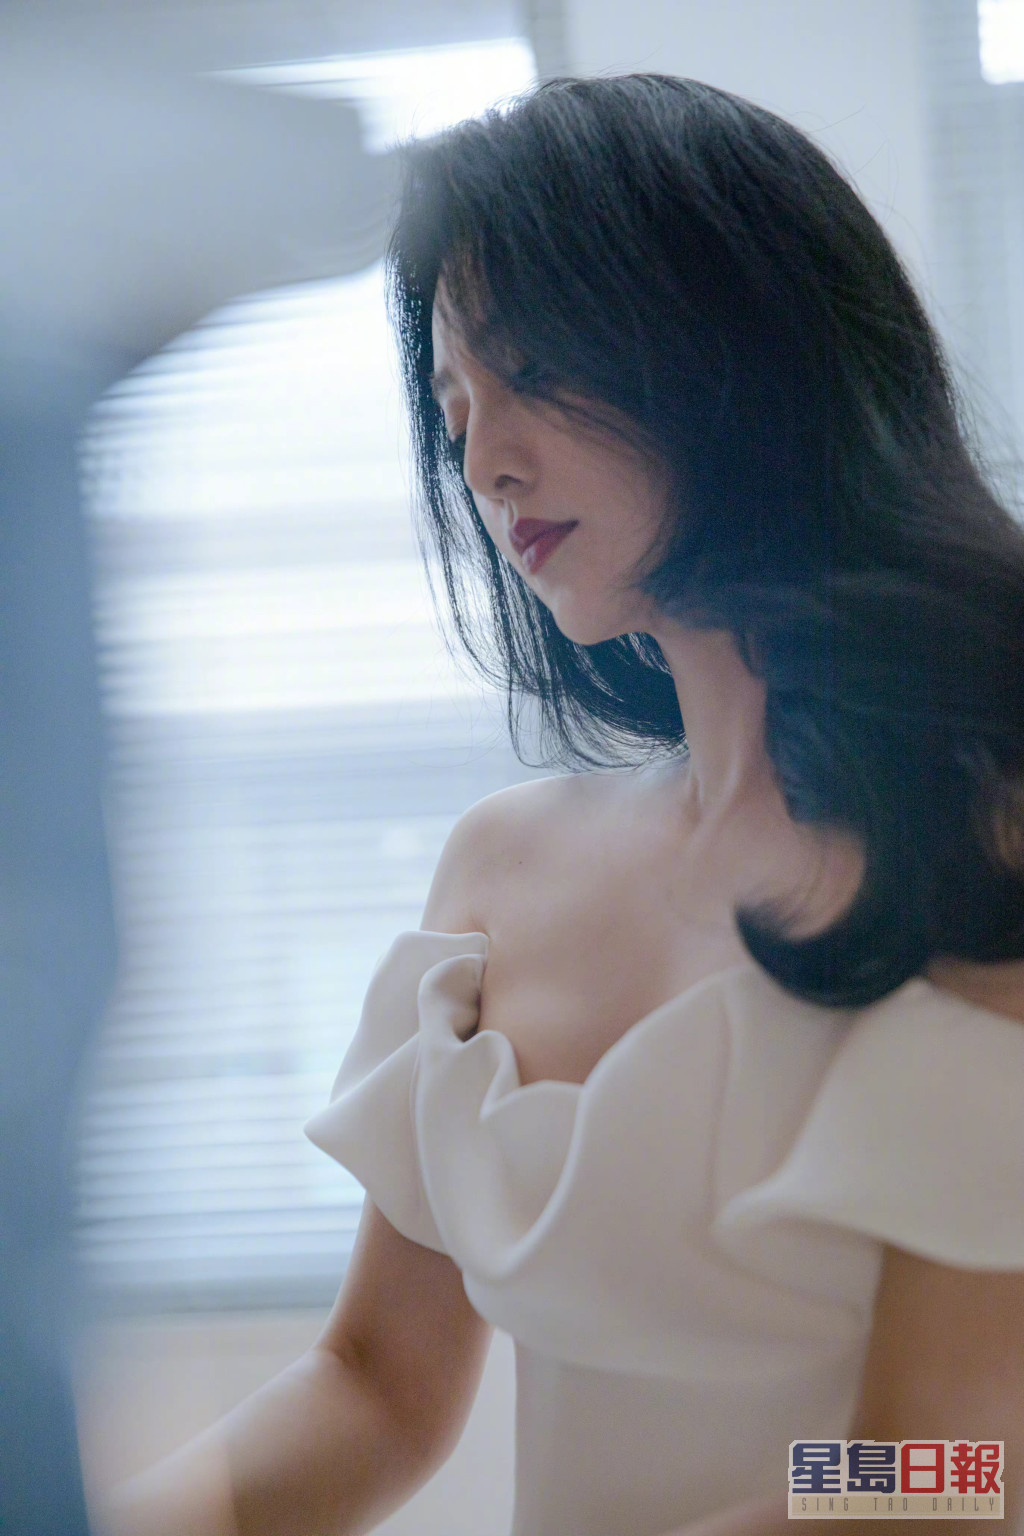 日前范冰冰在韩国釜山国际电影节获颁「杰出亚洲演员奖」，她虽然未有亲身到场领奖，但预先拍下致谢词，她言谈间透露「明年见」，令网民暗示范冰冰明年会正式复出。